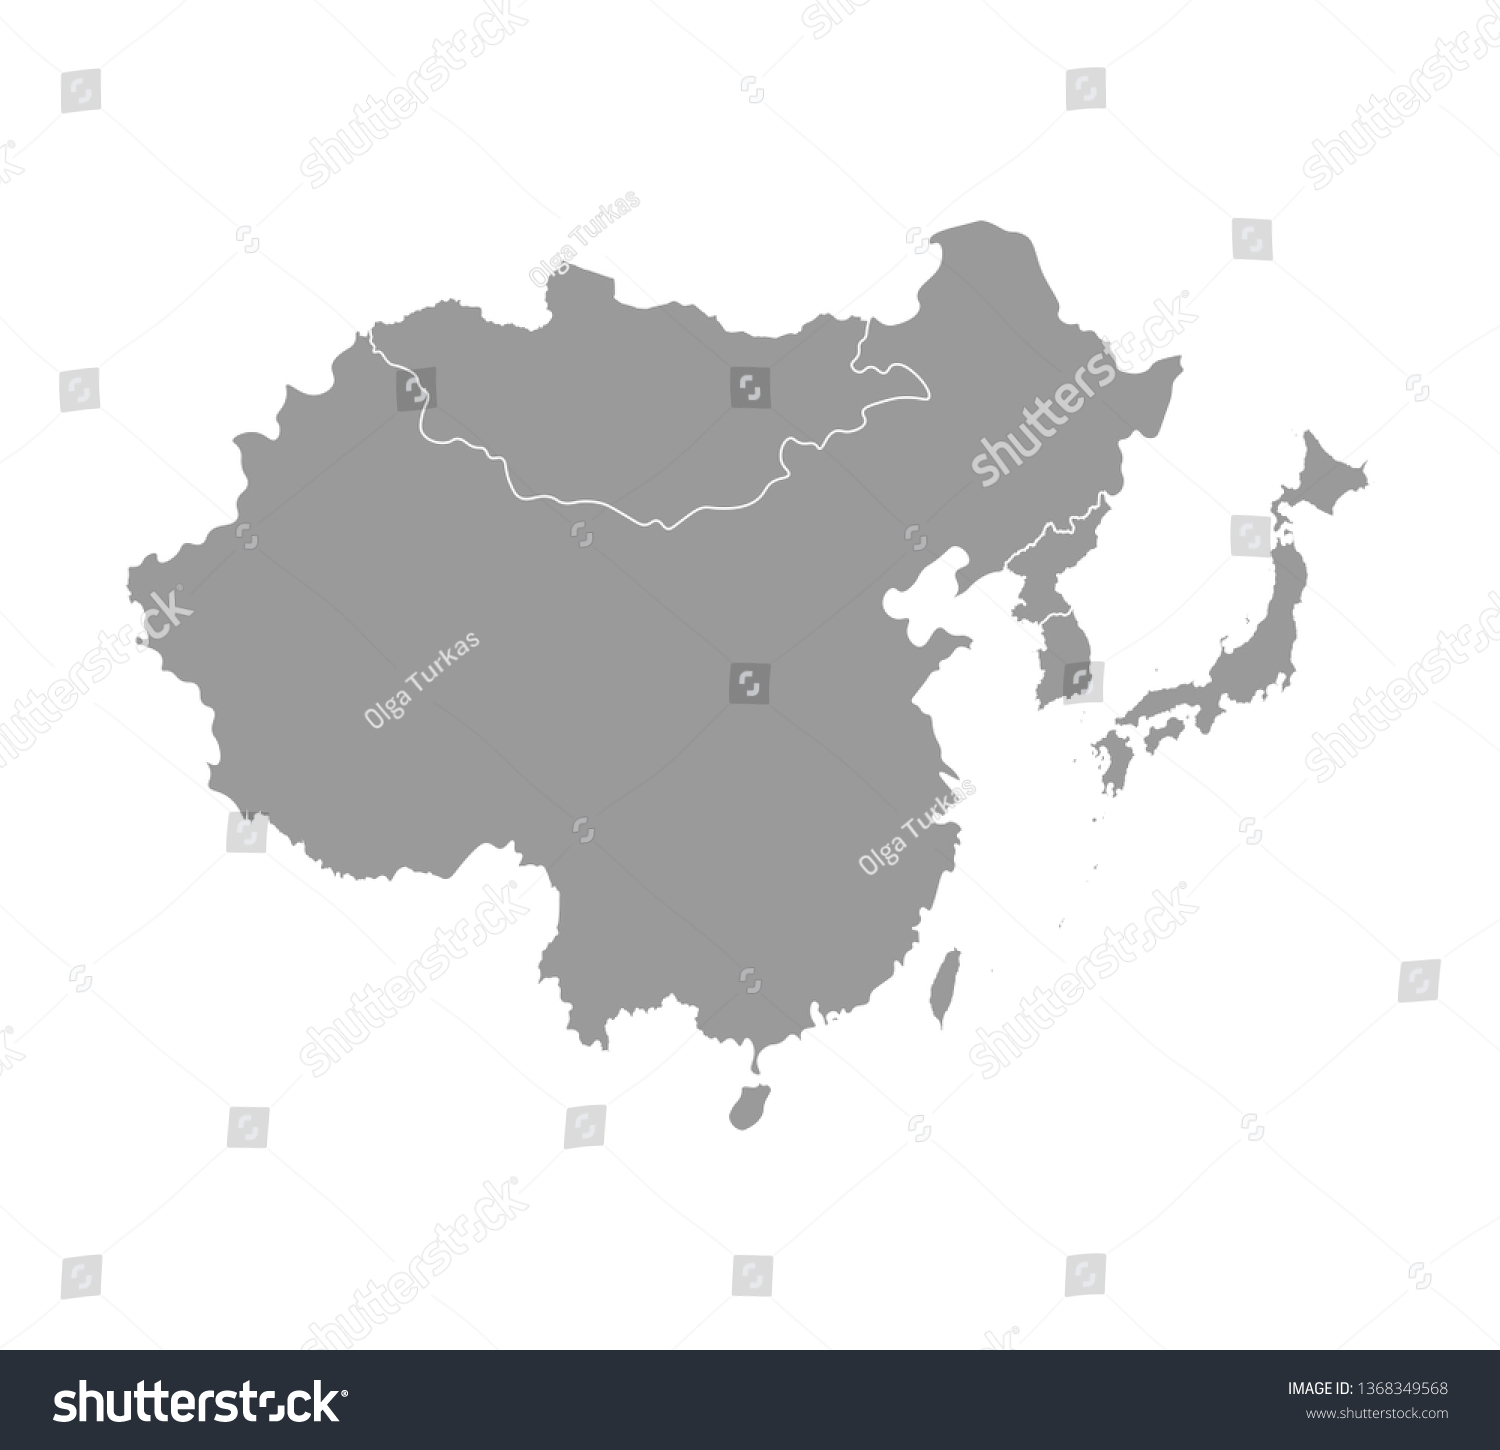 アジアの国の地図が簡略化されたベクターイラスト 東の地域 中国 日本 韓国 北朝鮮 台湾 モンゴロイアの国境 グレーのシルエット 白い背景 のベクター画像素材 ロイヤリティフリー